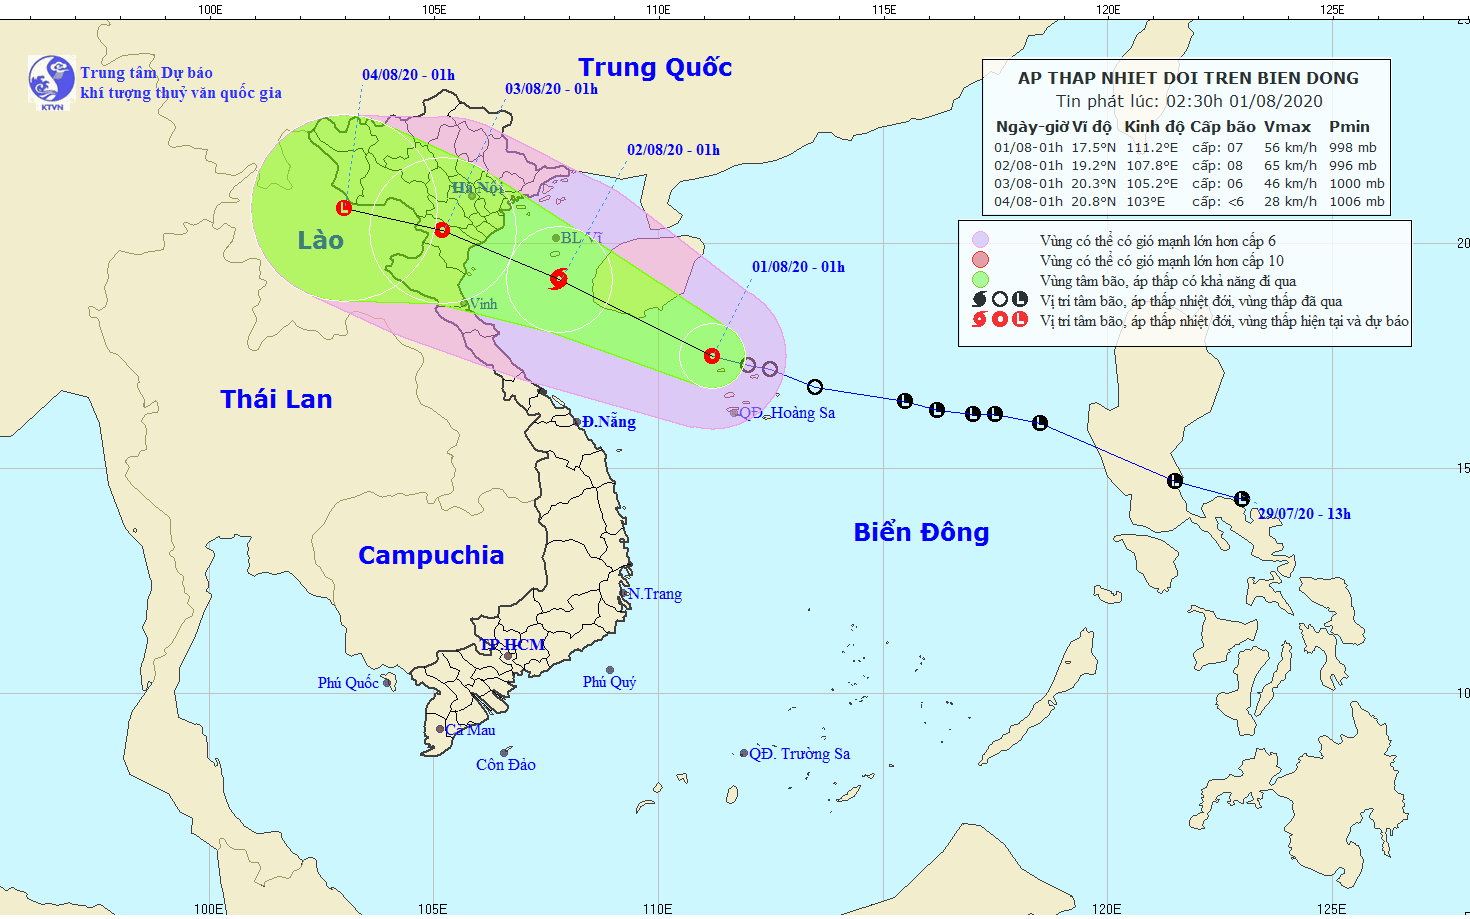 Áp thấp nhiệt đới có khả năng mạnh thành bão, hướng vào đất liền Việt Nam